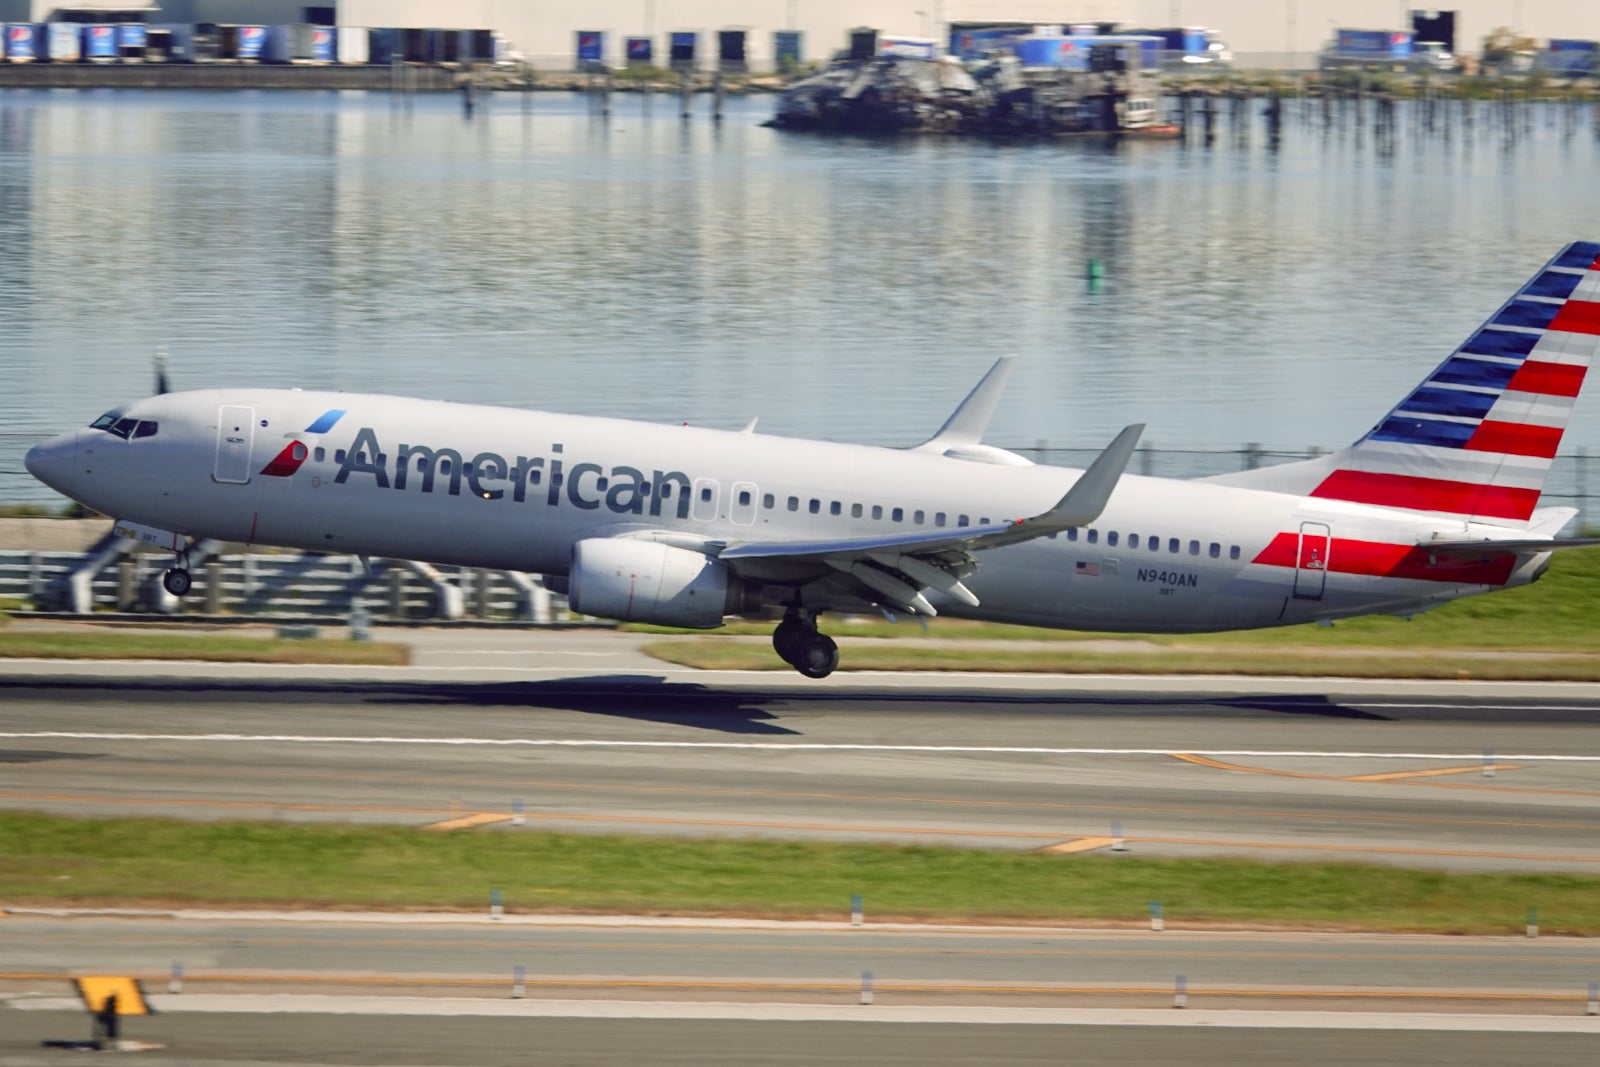 American Airlines Boeing 737-800 landing